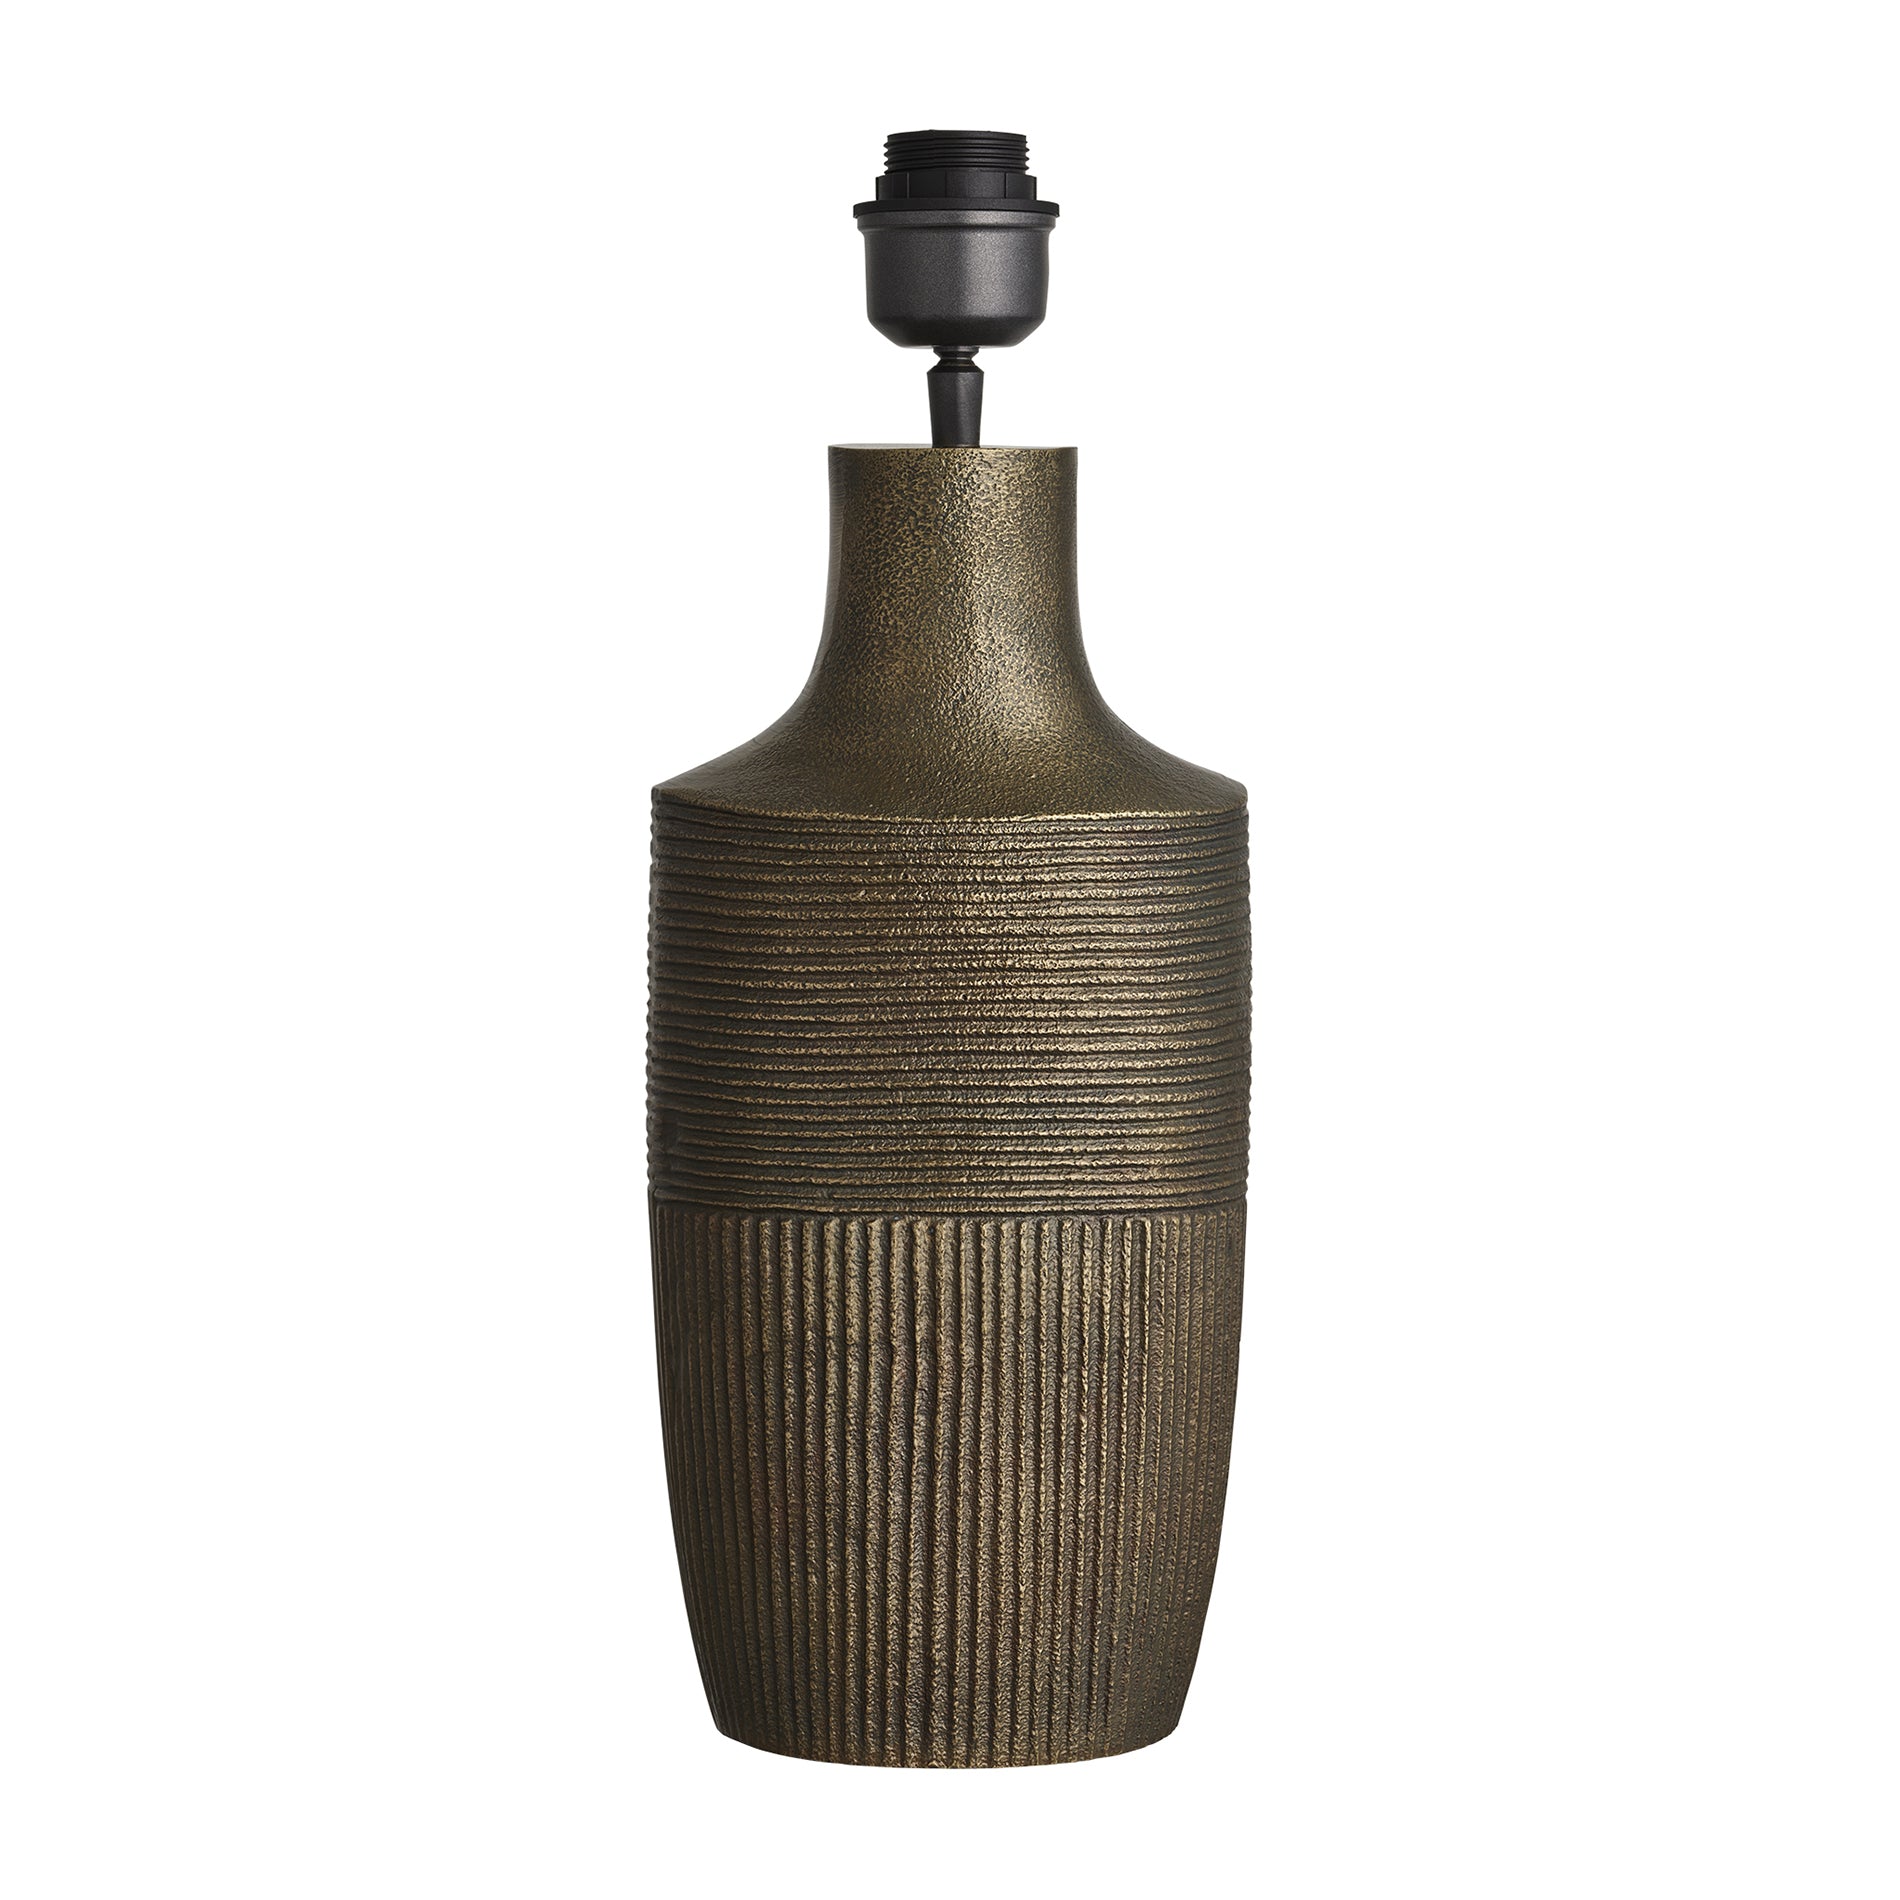 Ornate Vase Table Lamp - Brass - Base Only Industville ORN-VTL-B-BO